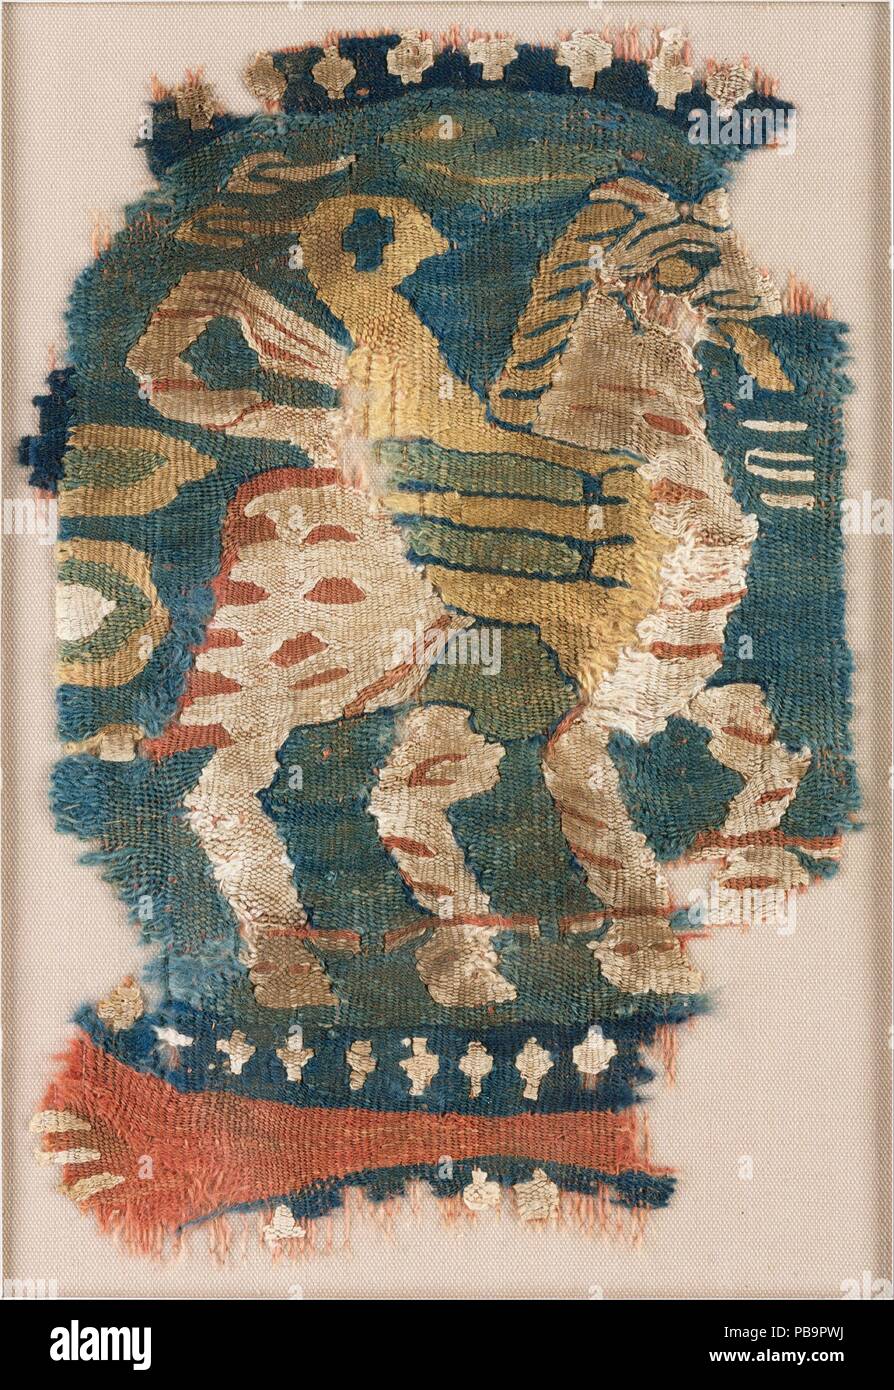 Cocarde avec cheval ailé. Dimensions : Textile : L. 10 1/2 in. (26,7 cm) W. 7 1/4 in. (18.4 cm) : Montage L. 22 1/2 in. (57,2 cm) 16 1/2 in. W. (41,9 cm). Date : 9ème siècle. Musée : Metropolitan Museum of Art, New York, USA. Banque D'Images